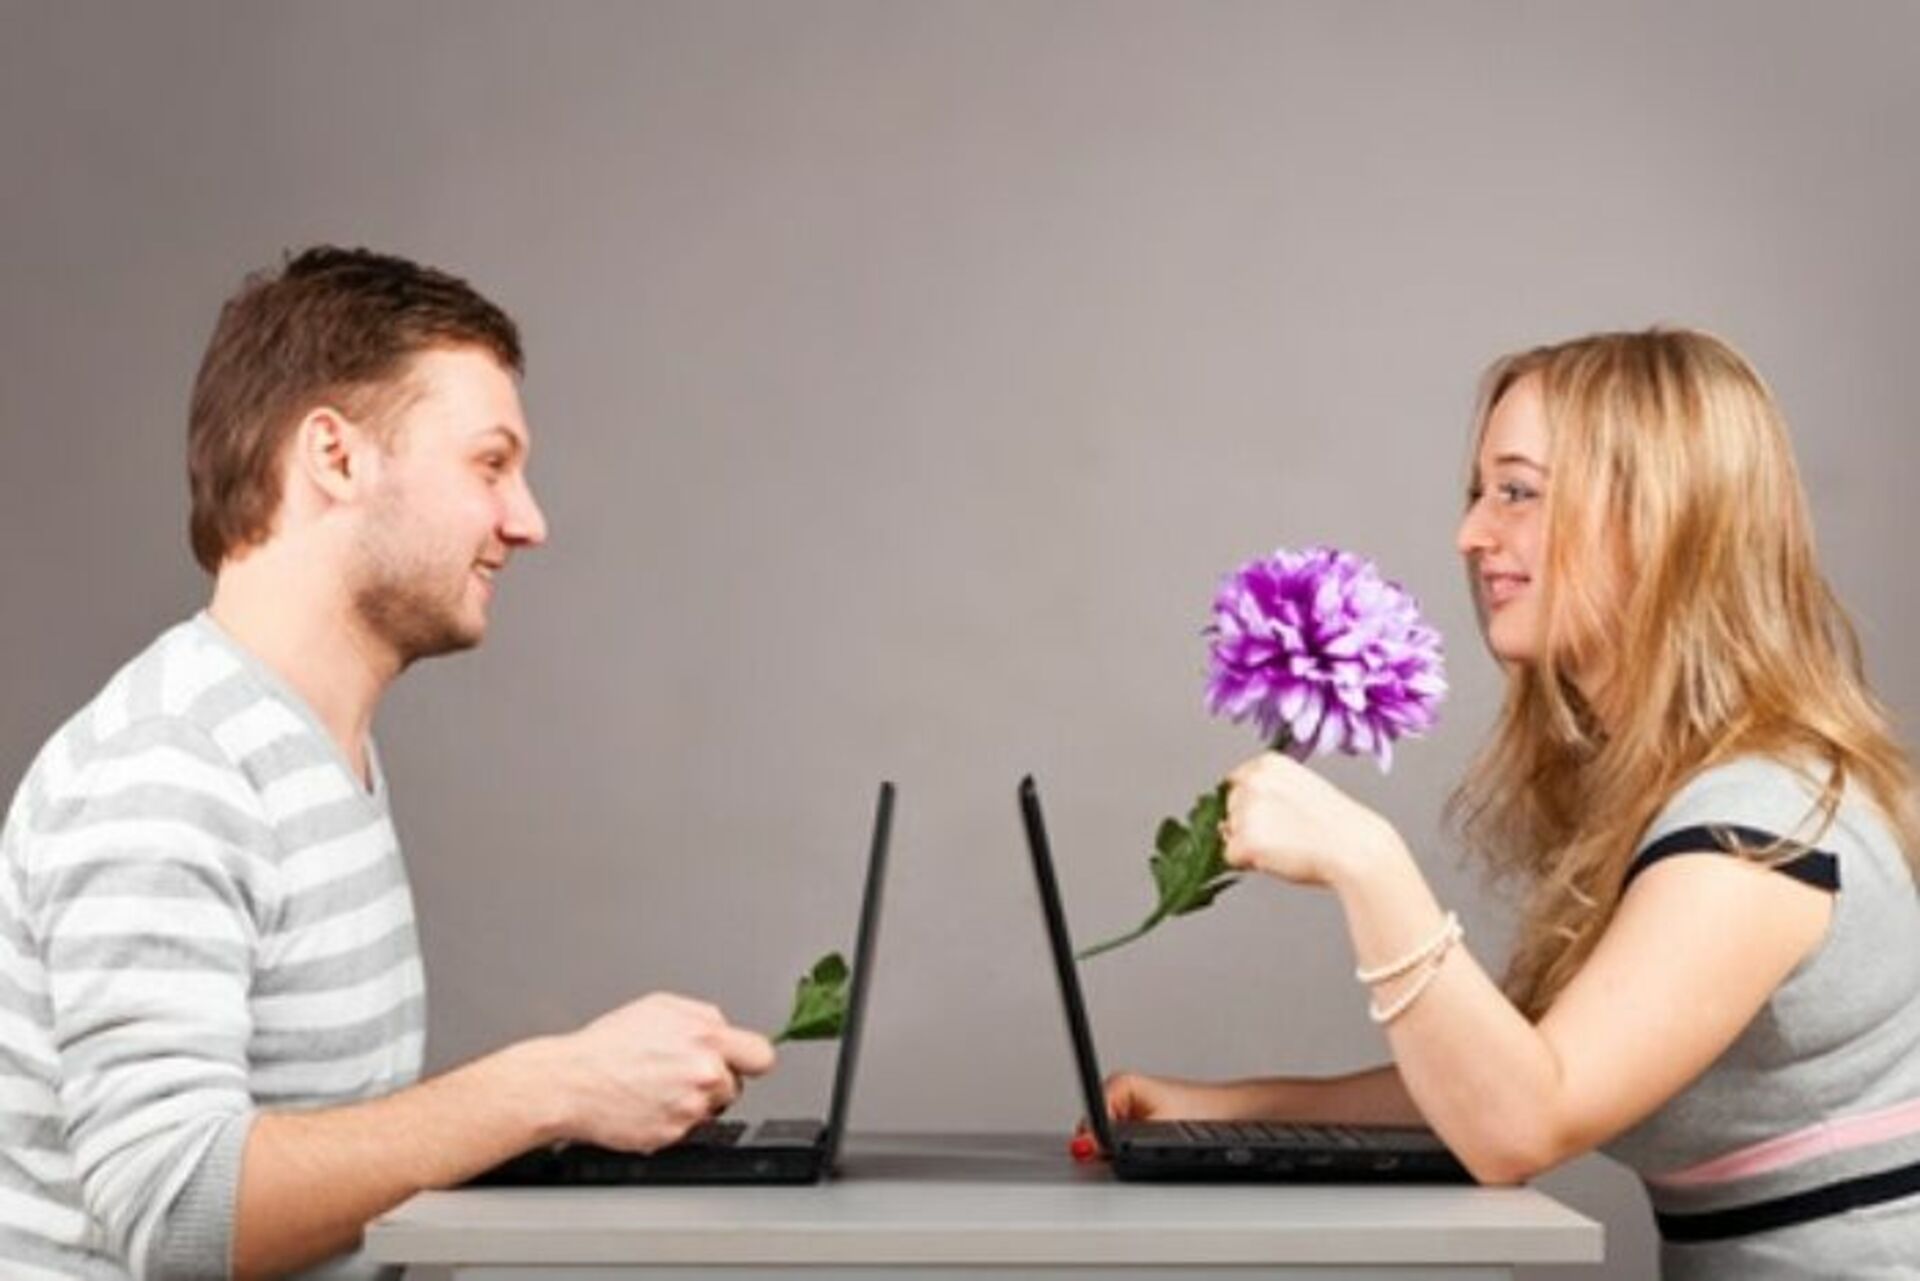 Сайт знакомств флирт найти свою любовь. Общение в интернете. Общение в реальной жизни. Общение реальное и виртуальное. Мужчина и женщина в интернете.